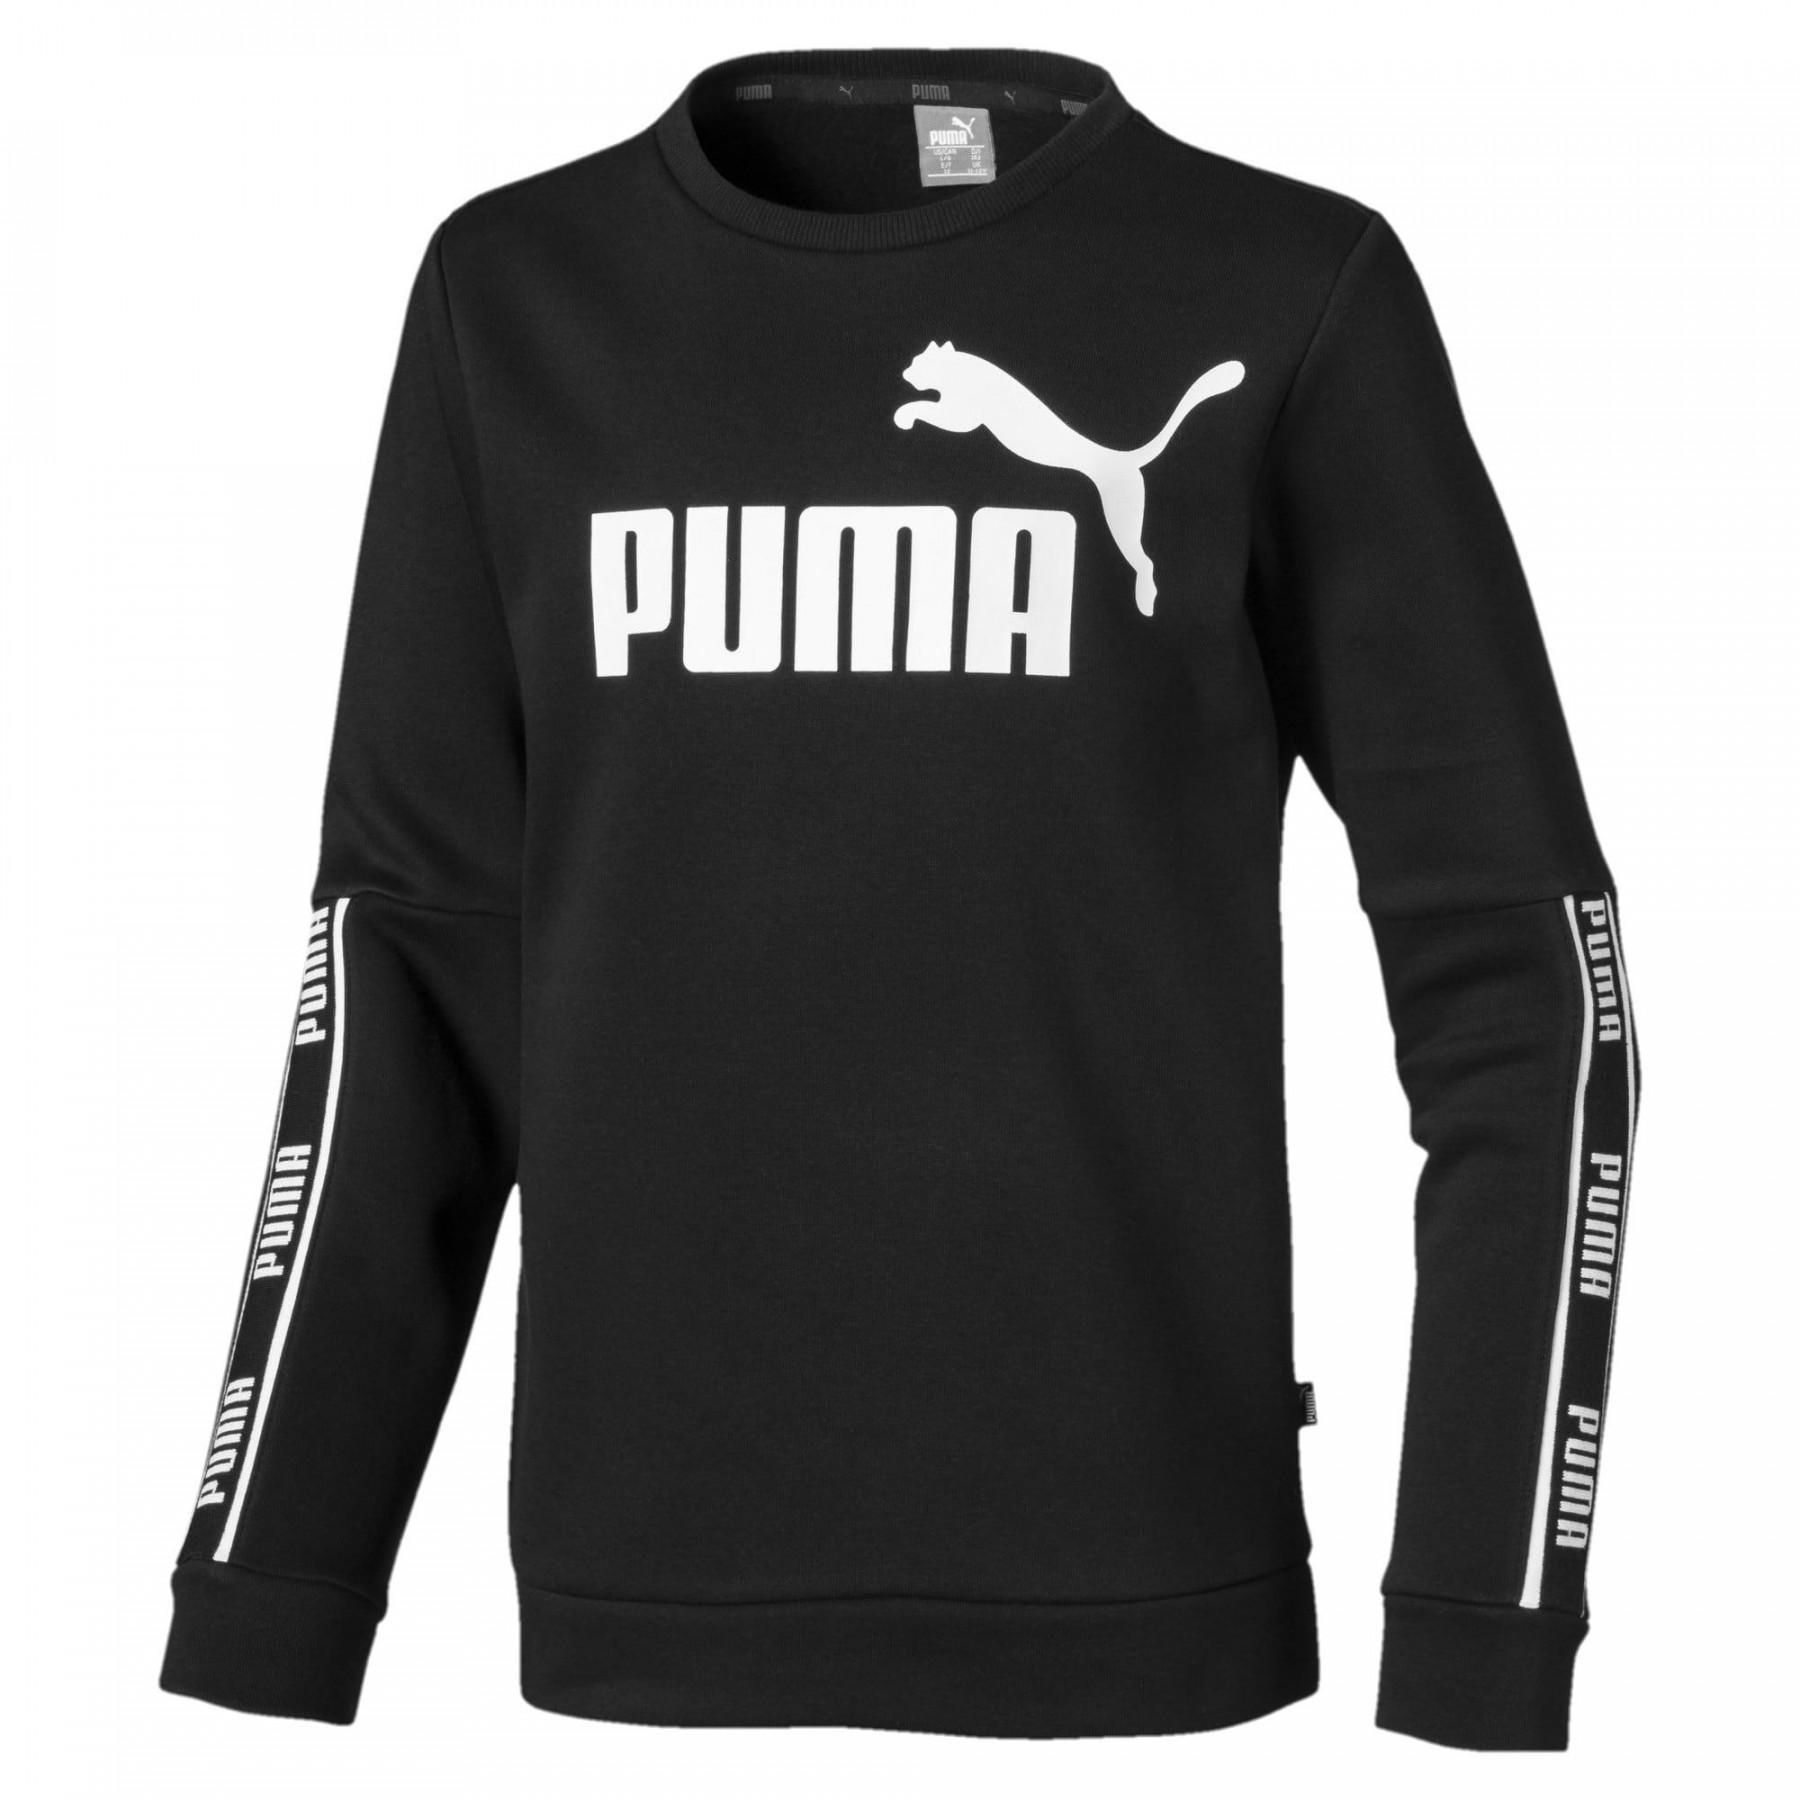 Camisola para crianças Puma Amplified